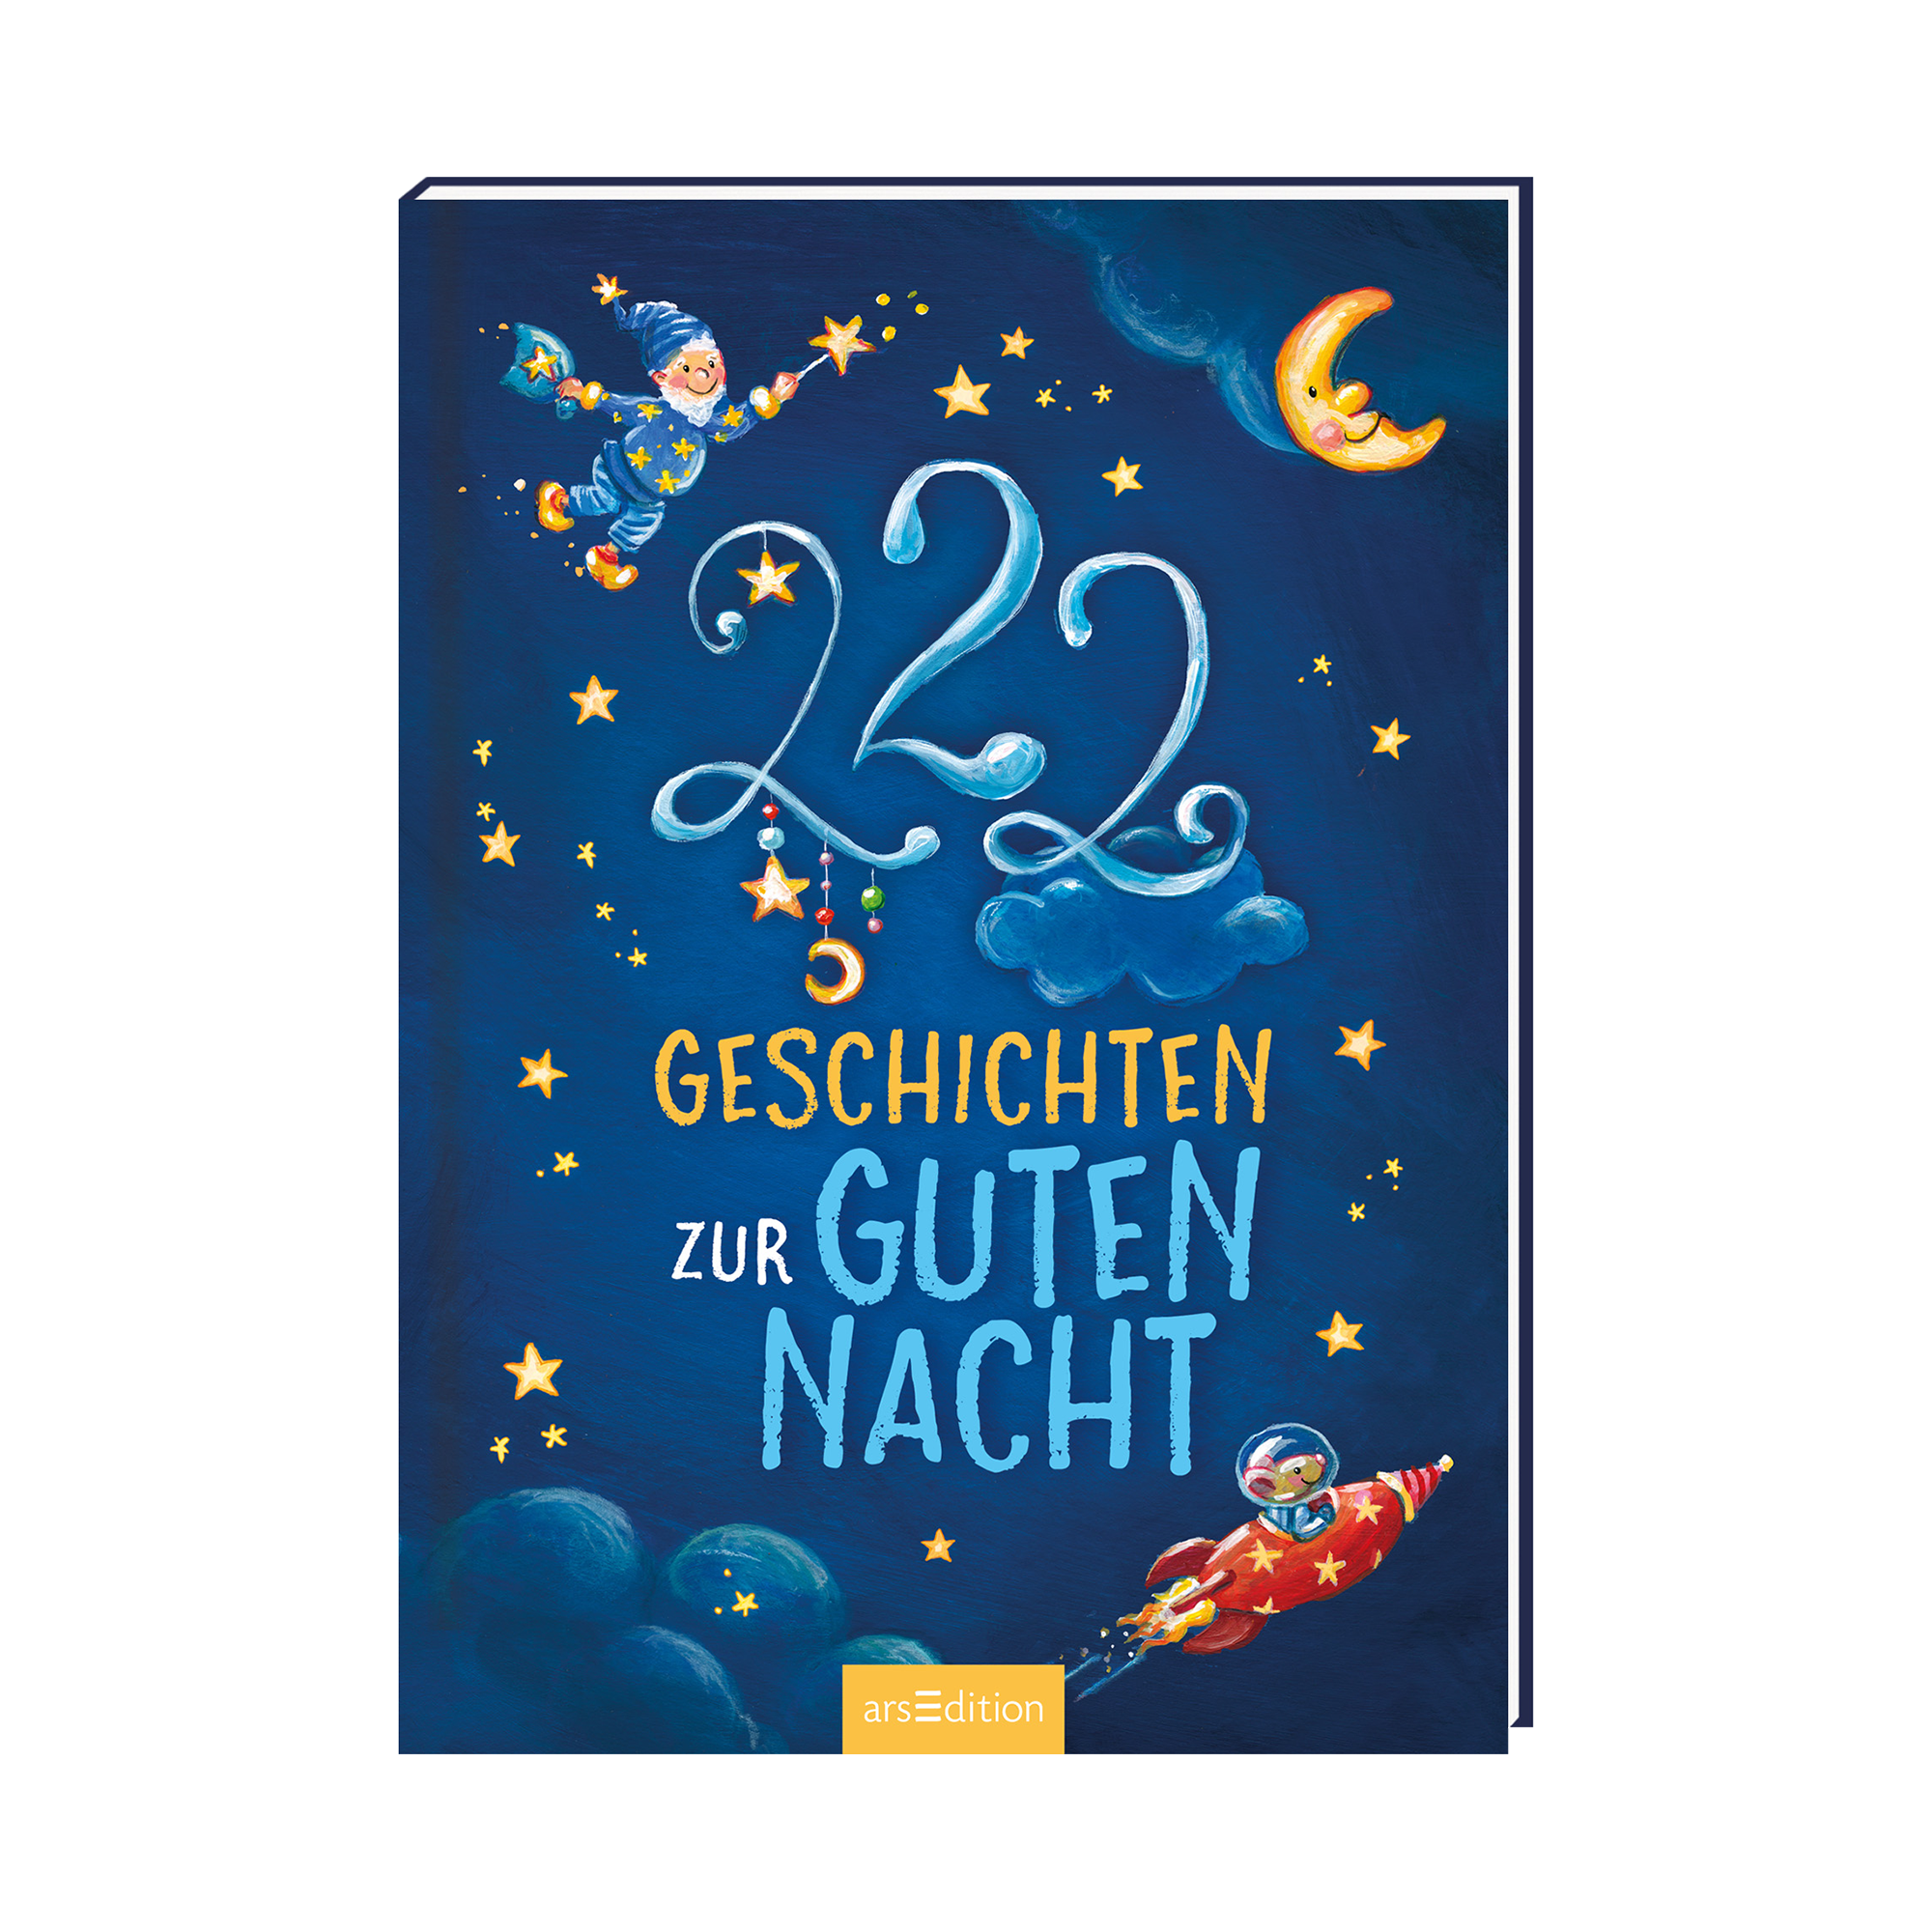 222 Geschichten zur Guten Nacht arsEdition Blau 2000584970308 1